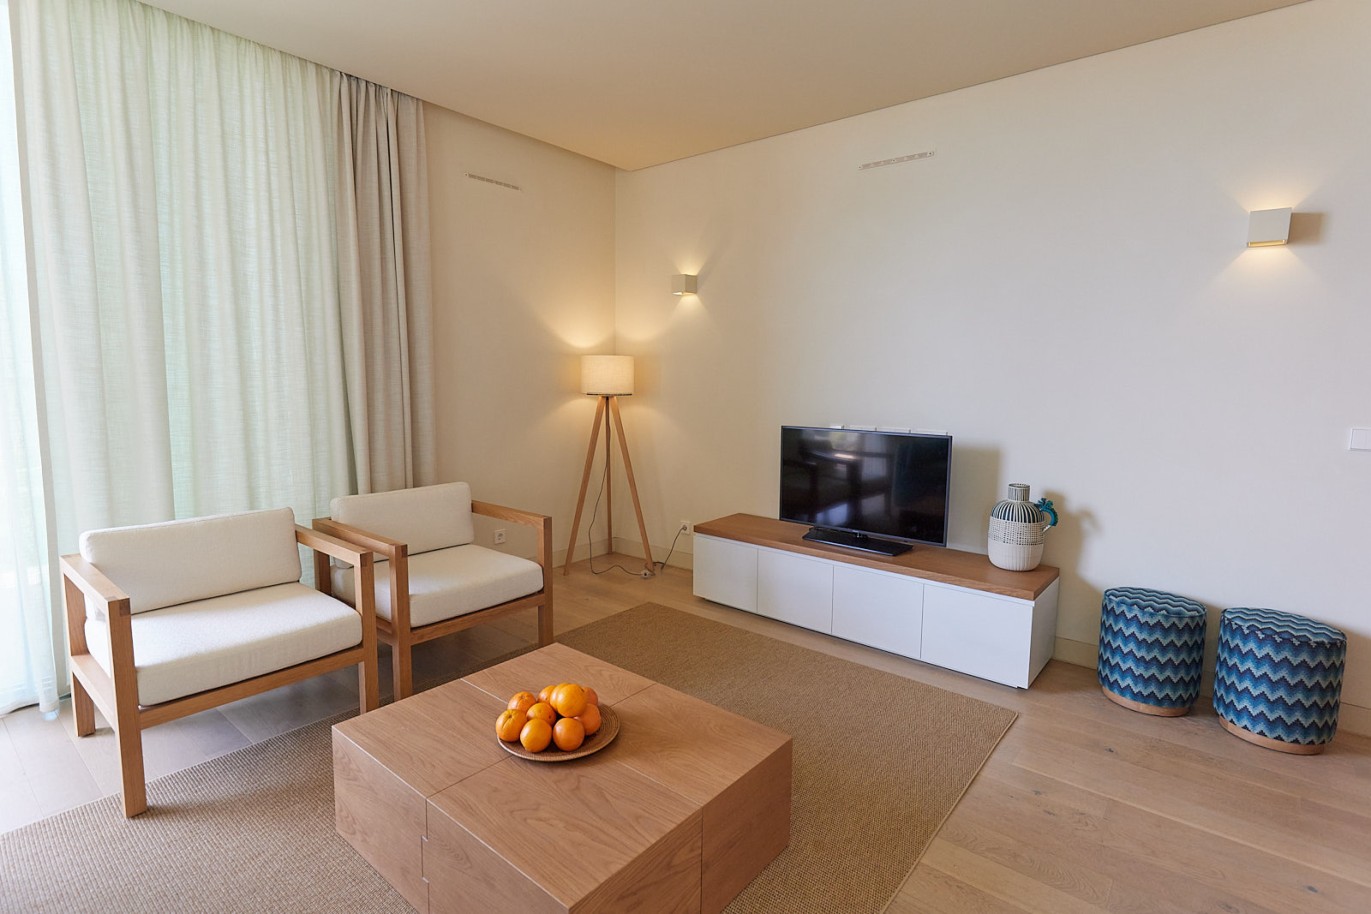 3 bedroom flat in resort, for sale in Porches, Algarve_230746